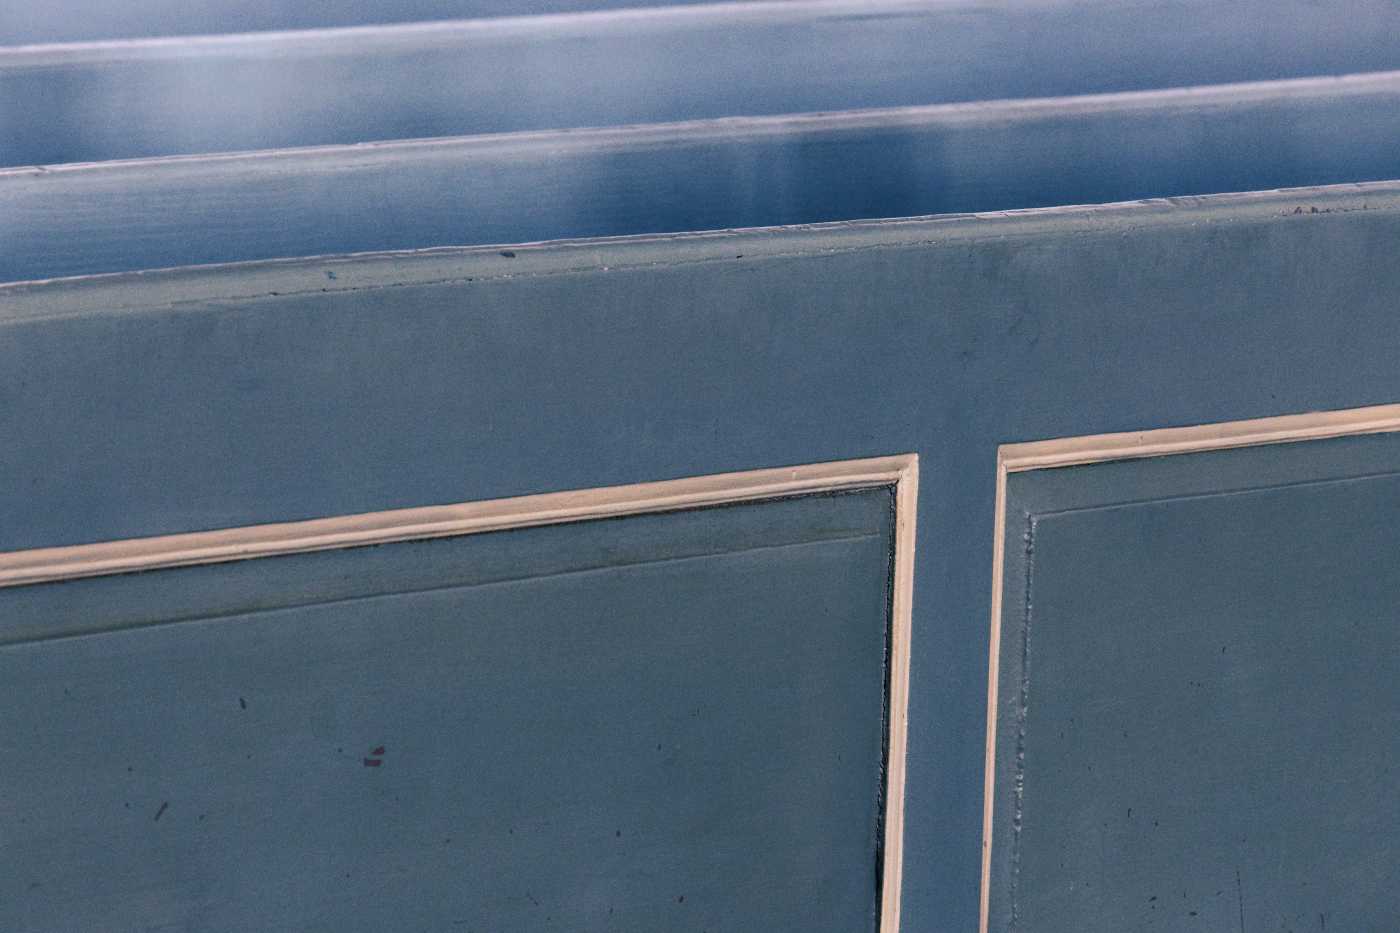 Blaue Kirchenbank mit weiß abgesetzten Rahmen, sehr nah und im Ausschnitt